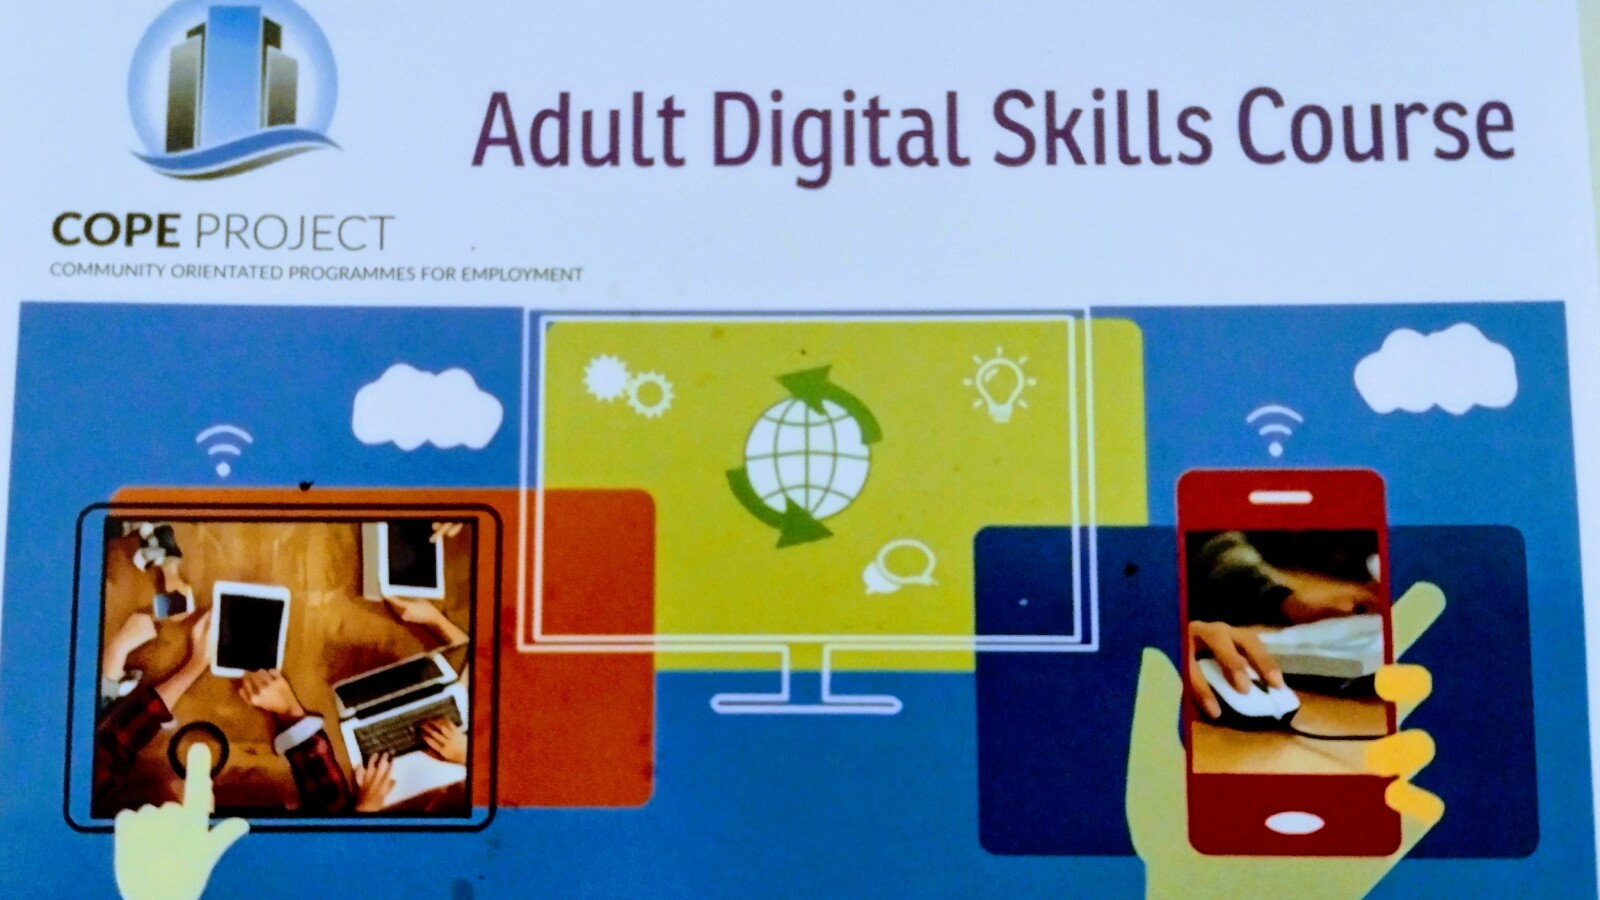 Adult Digital Skills Course v2